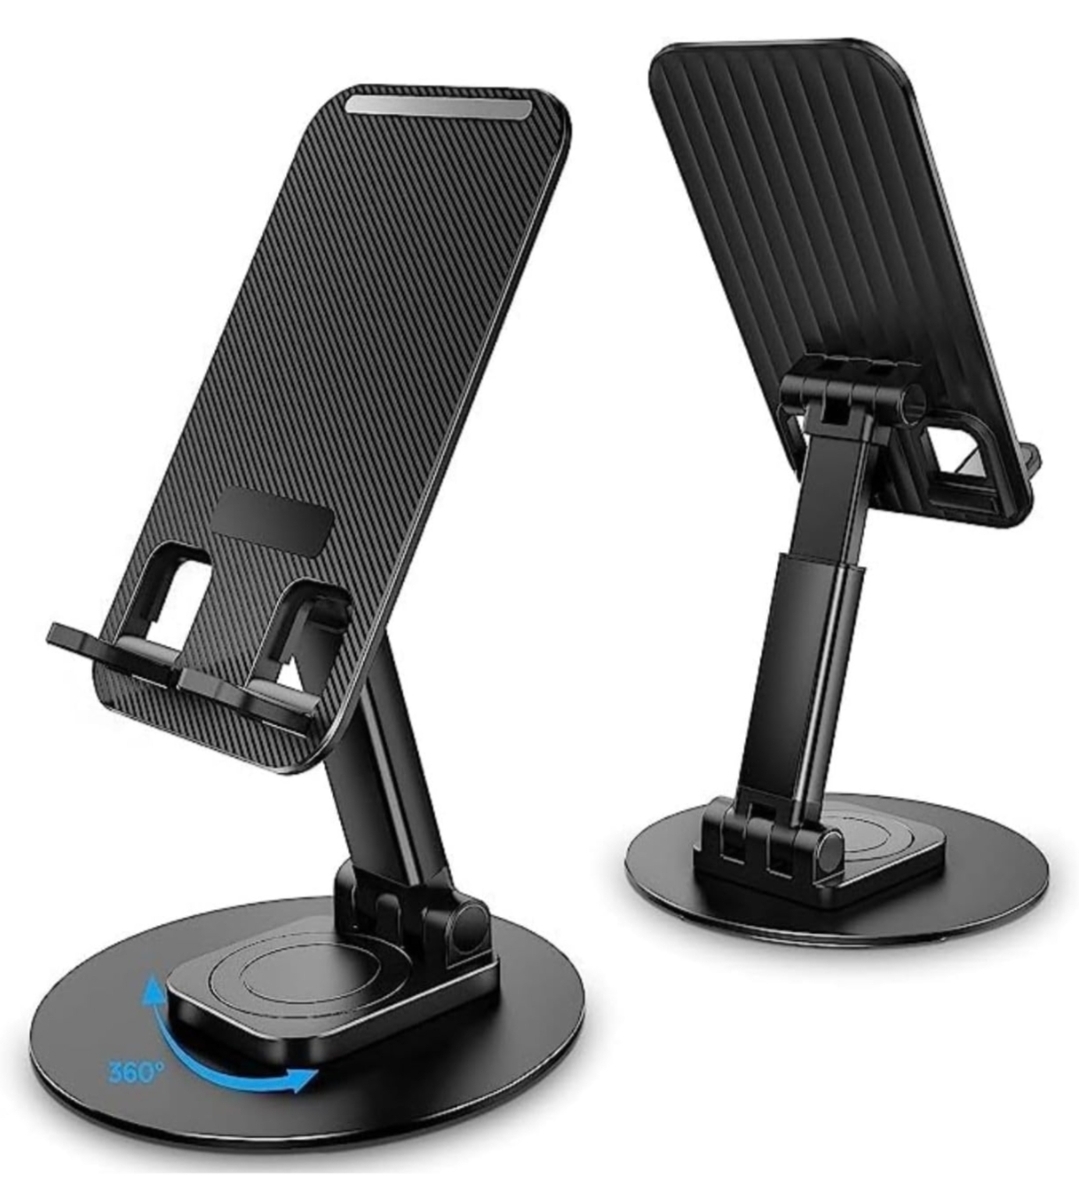 Prolet Mobile Stand Holder for Desk Sturdy,Anti-Slip,Height Angle Adjustable Mobile Holder Cellphone Holder Compatible (Black)